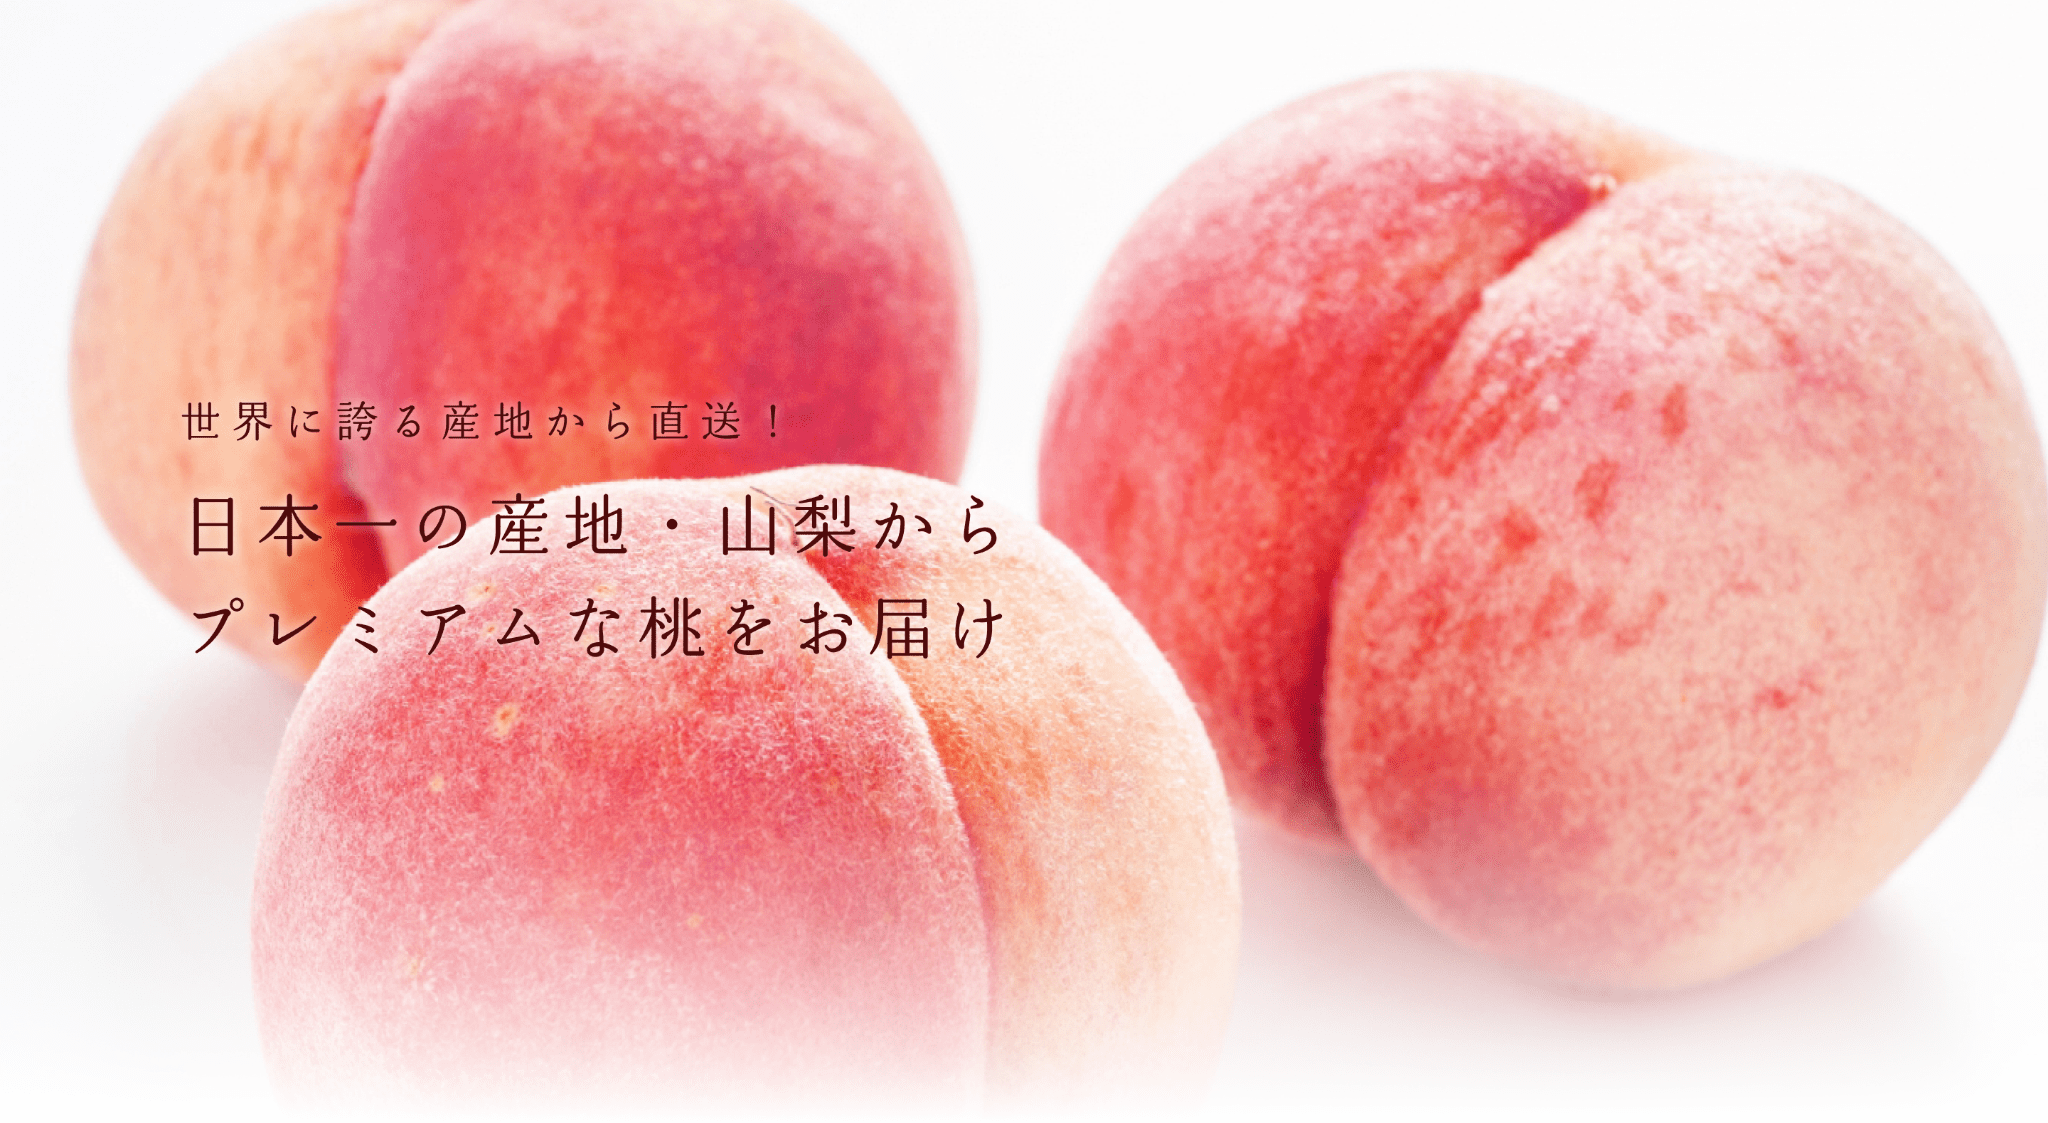 フルーツ山梨の桃